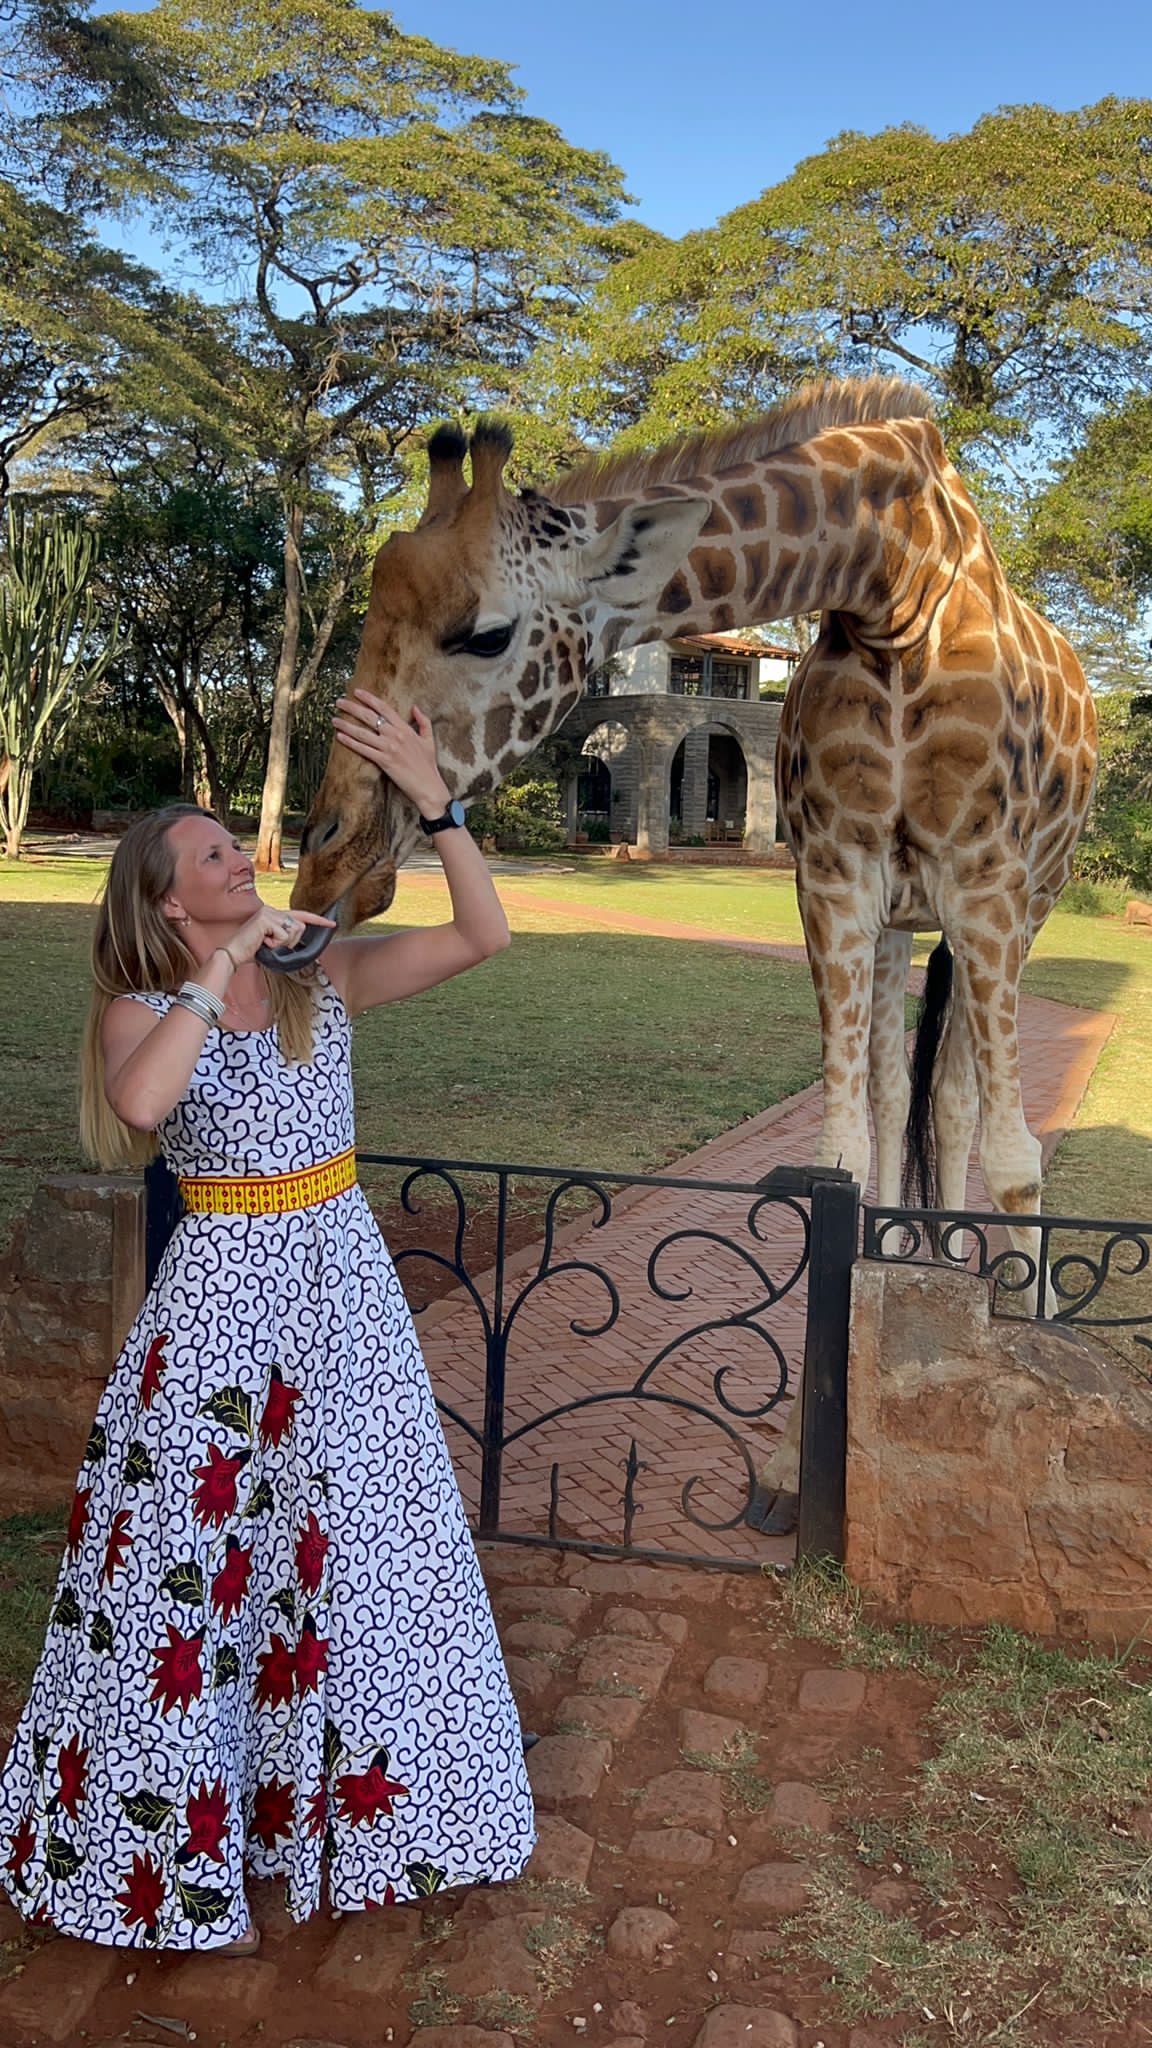 A lady feeding a giraffe